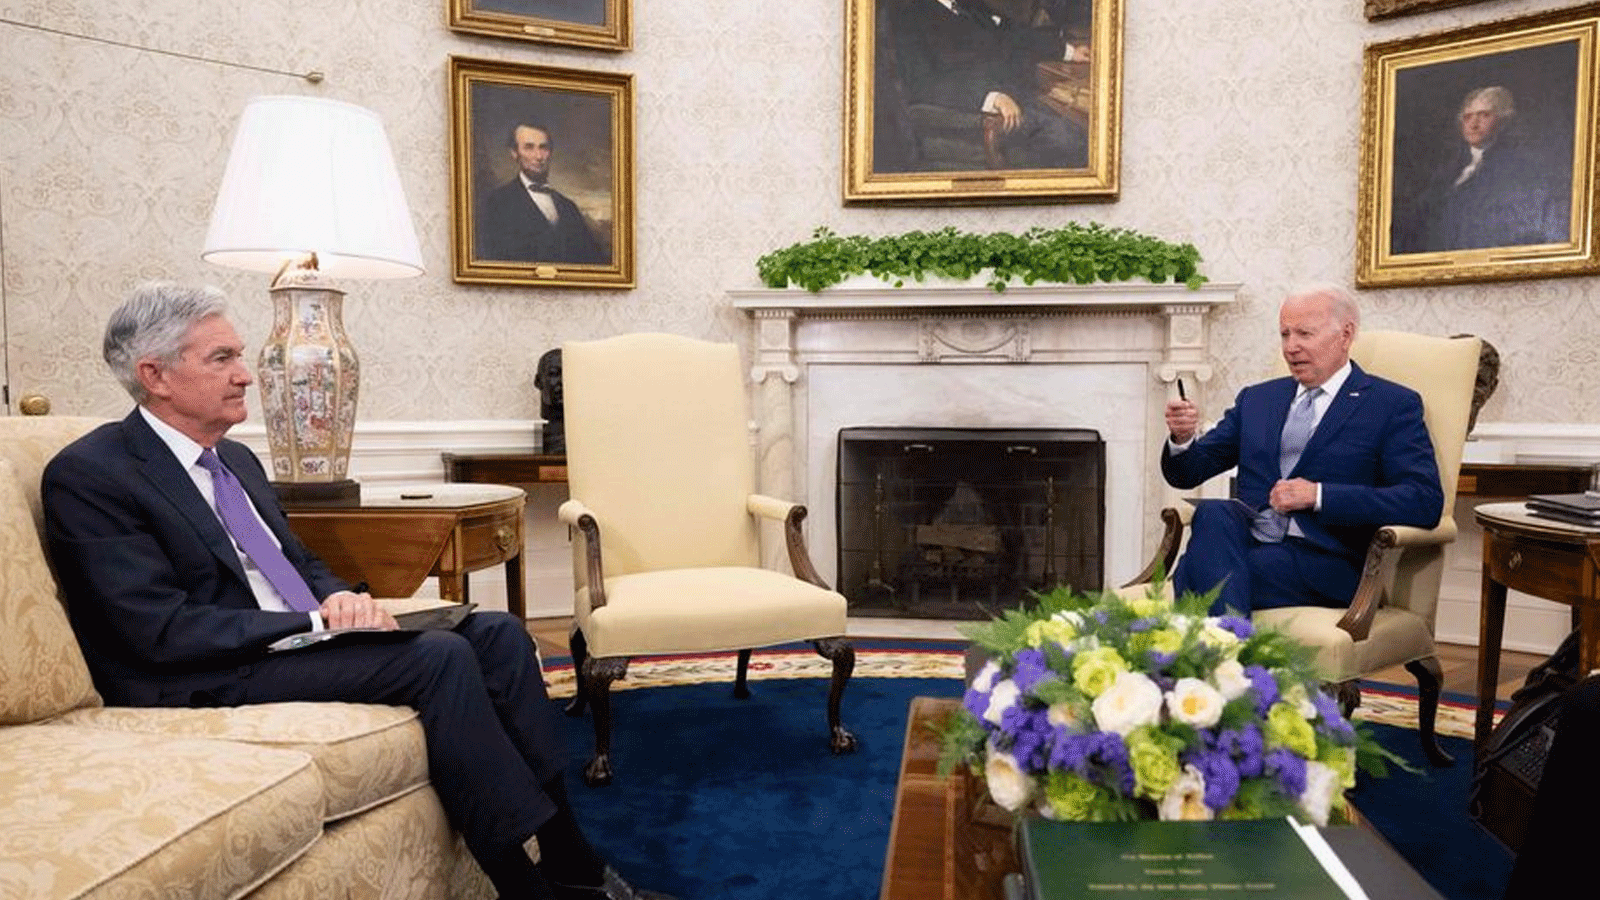 الرئيس الأميركي جو بايدن يلتقي رئيس مجلس الاحتياطي الفيدرالي جيروم باول لأول مرة منذ نوفمبر\تشرين الثاني الماضي في البيت الأبيض. 31 أيار\مايو 2022